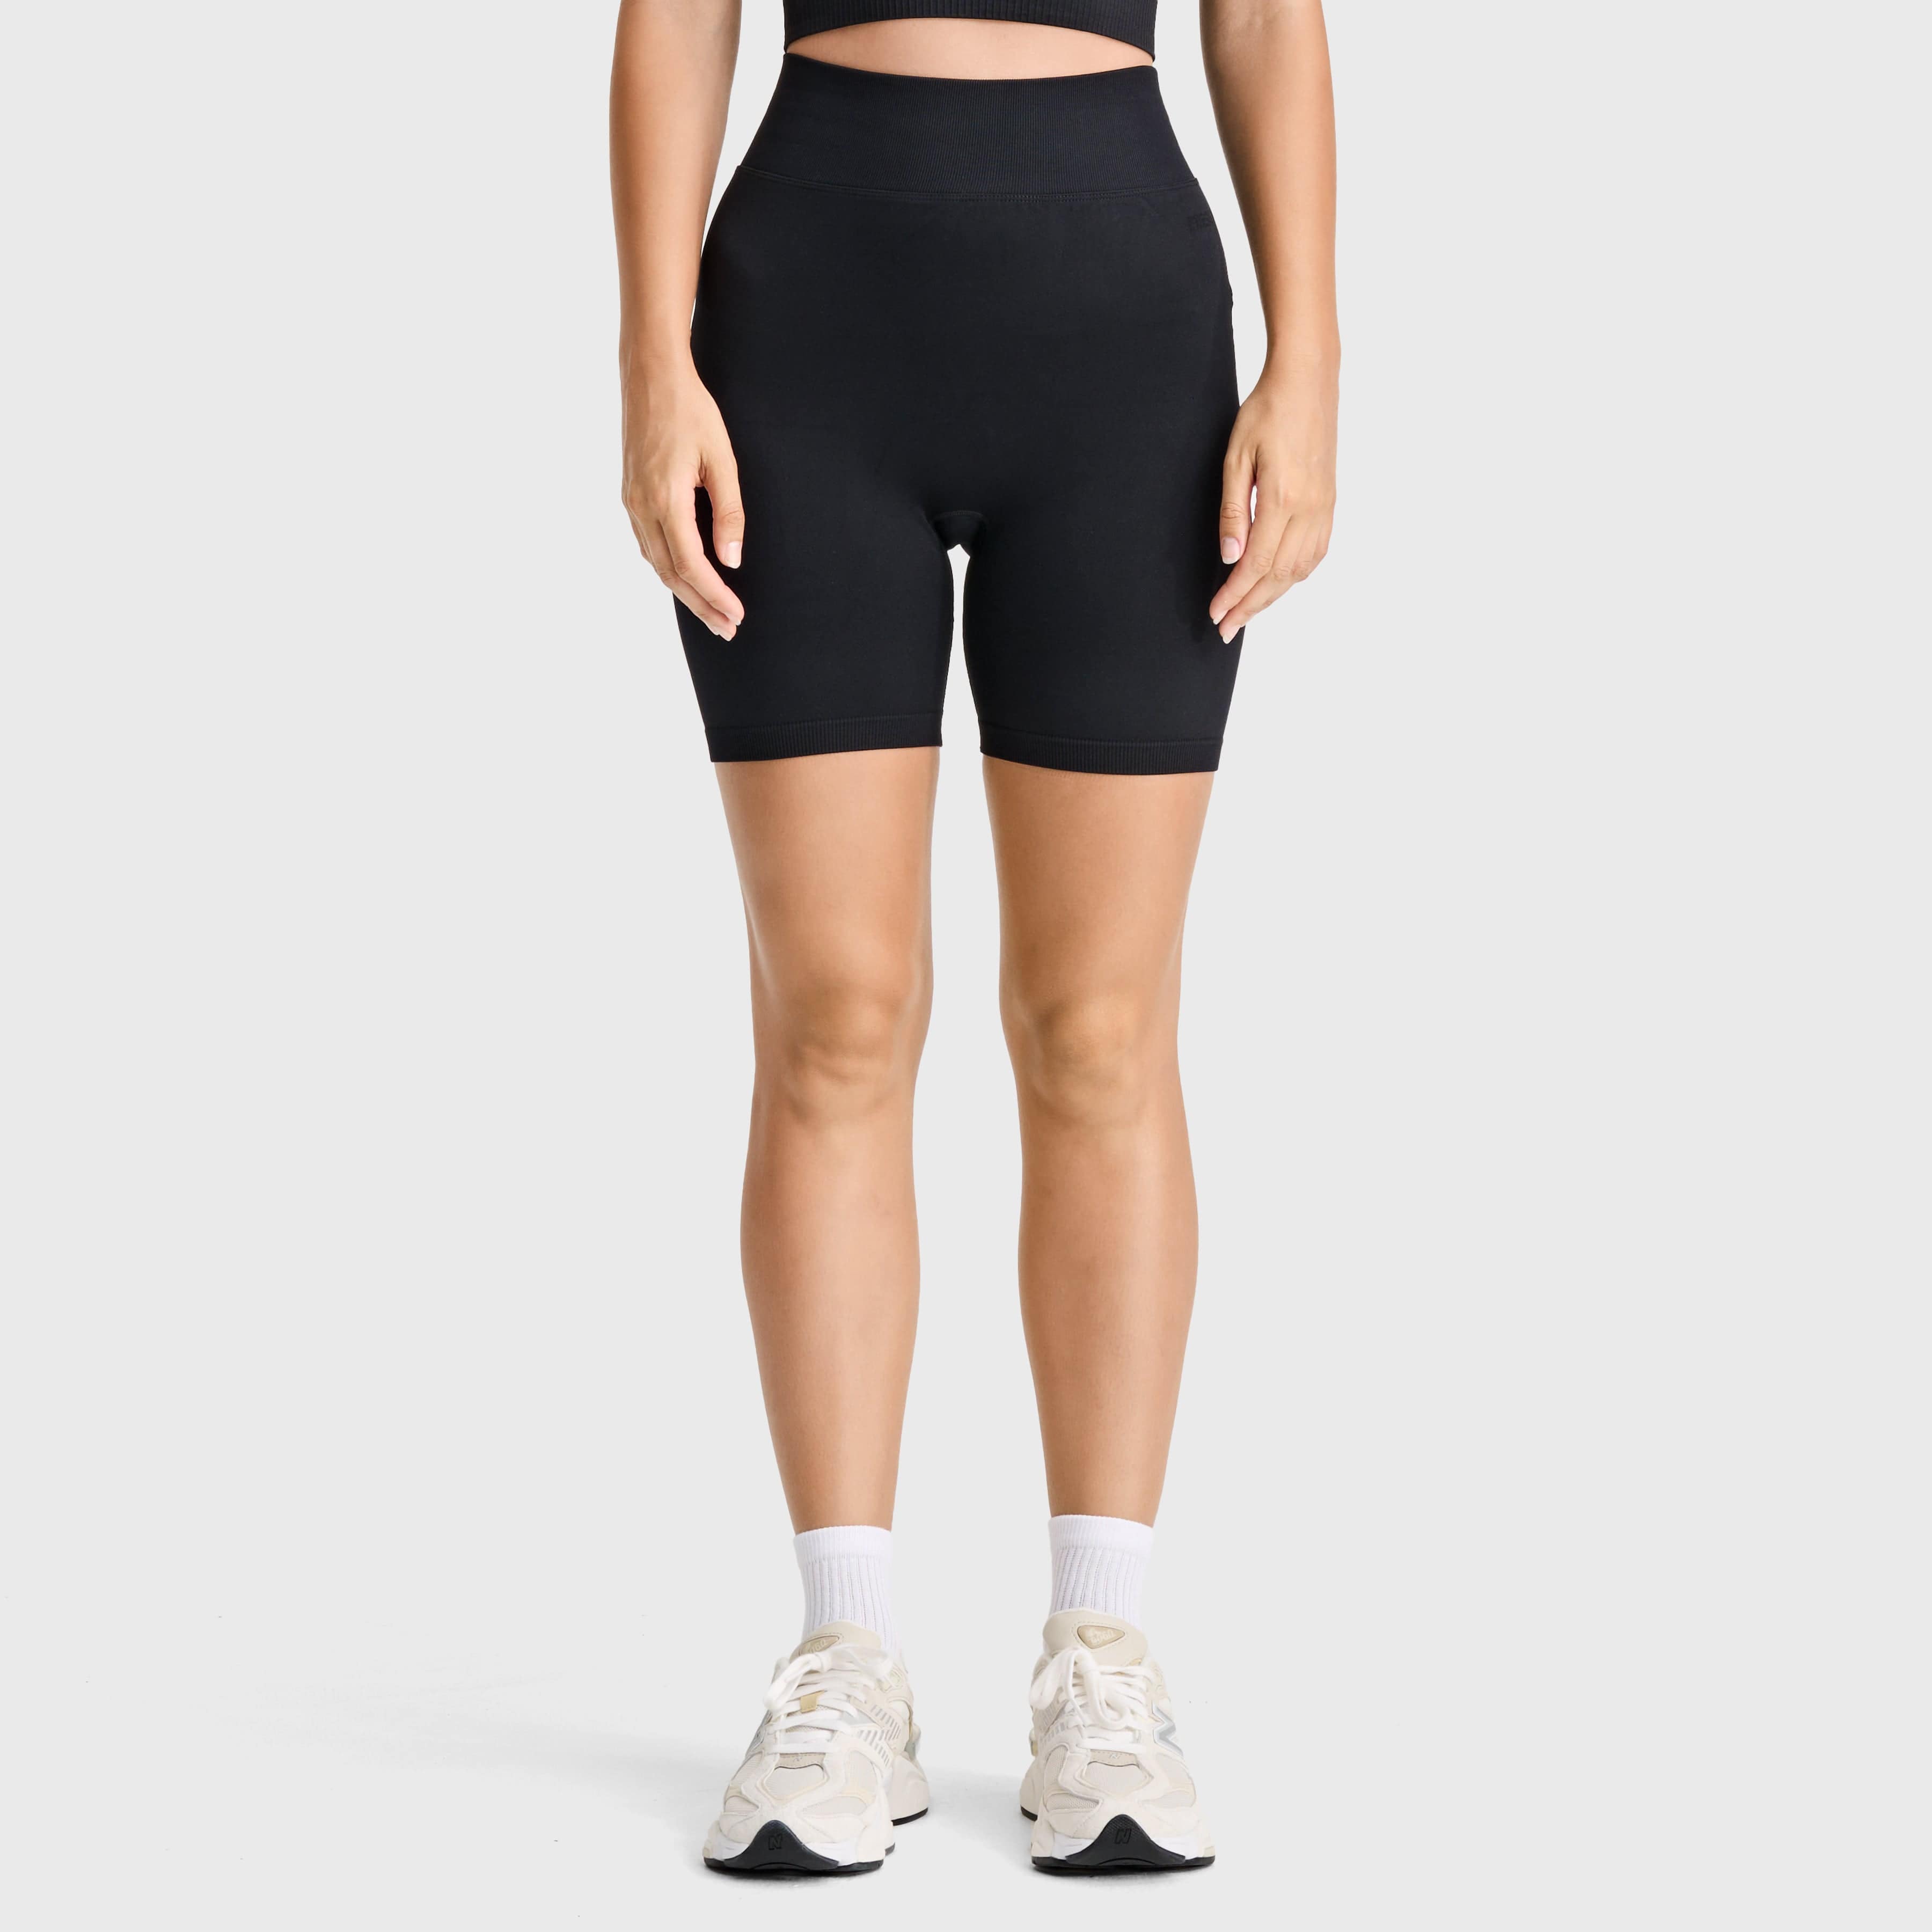 Seamless - High Waisted - Biker Shorts - Black 2